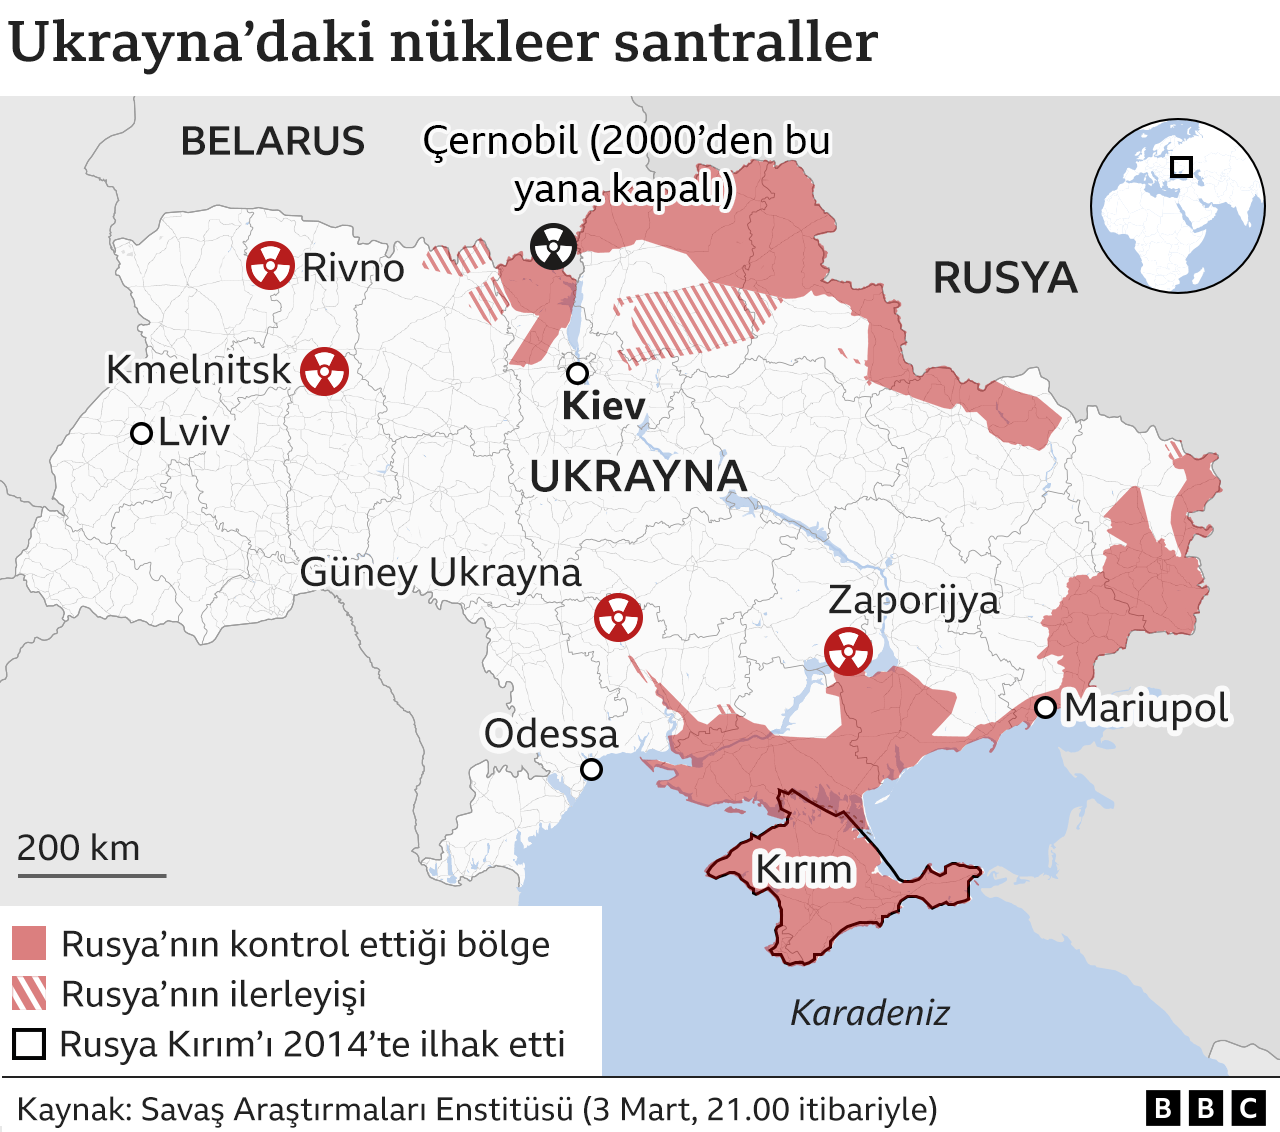 Rusya'nın Ukrayna'da nükleer santrale saldırısı ne kadar tehlike yarattı?